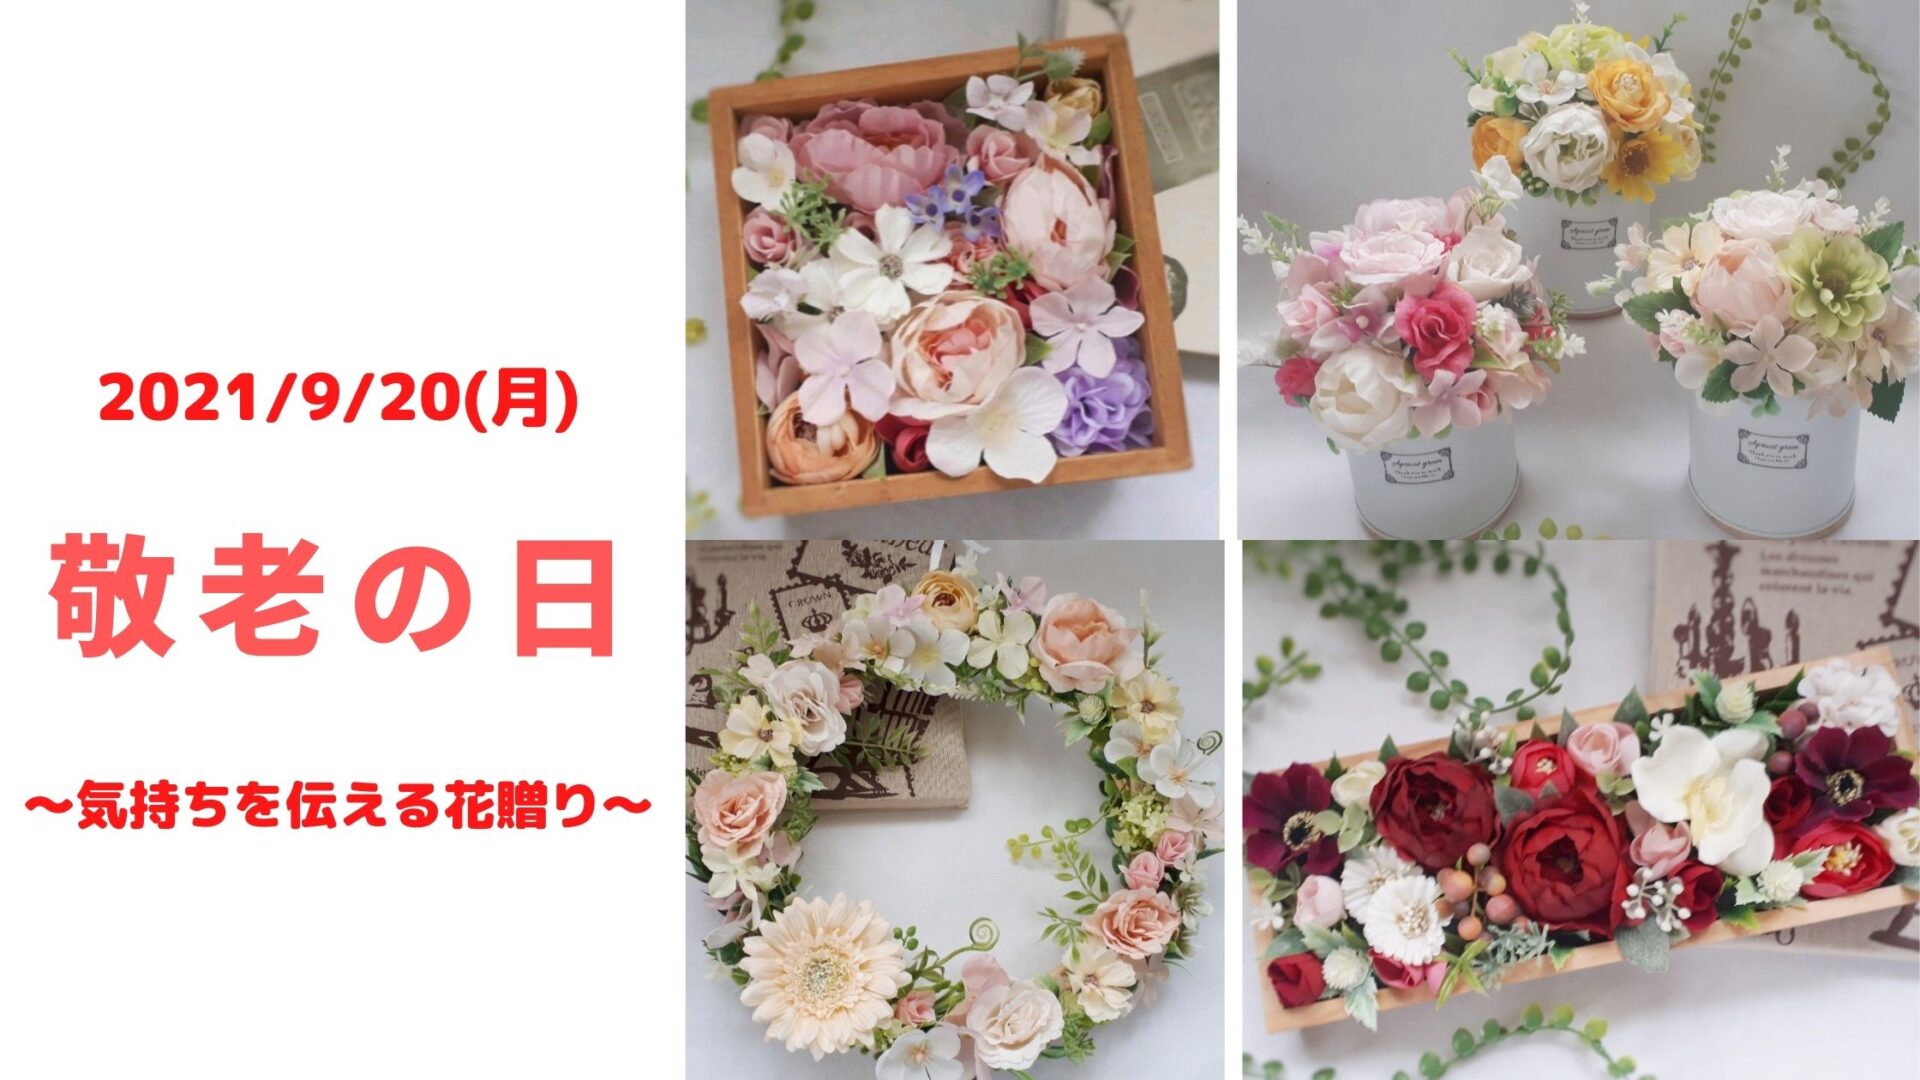 21 9 敬老の日のプレゼントにハンドメイドの花 手作り いっぽの種blog